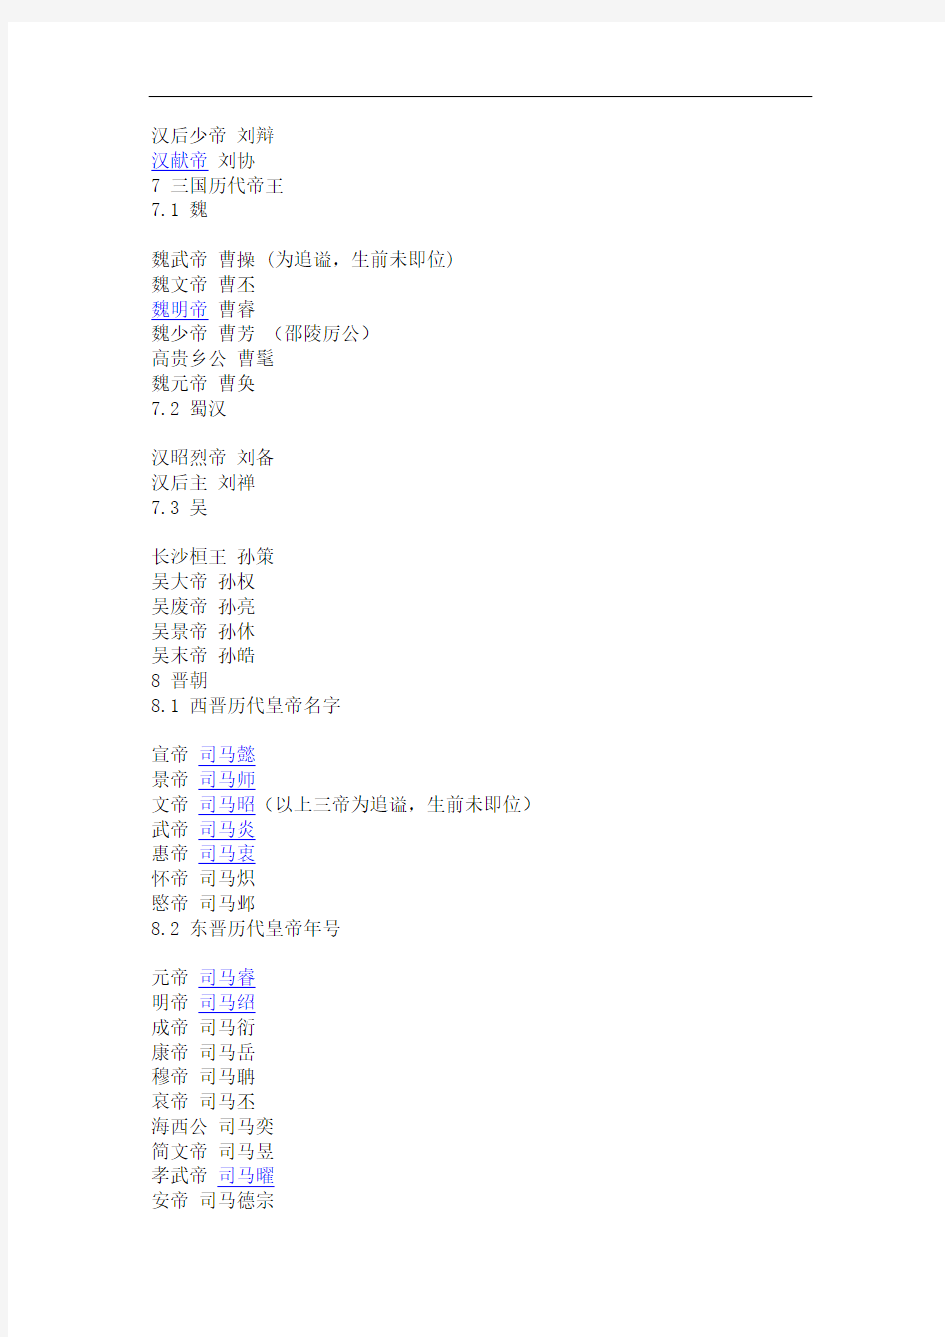 中国历代皇帝列表      还要有时间,姓名,年号,按顺序等